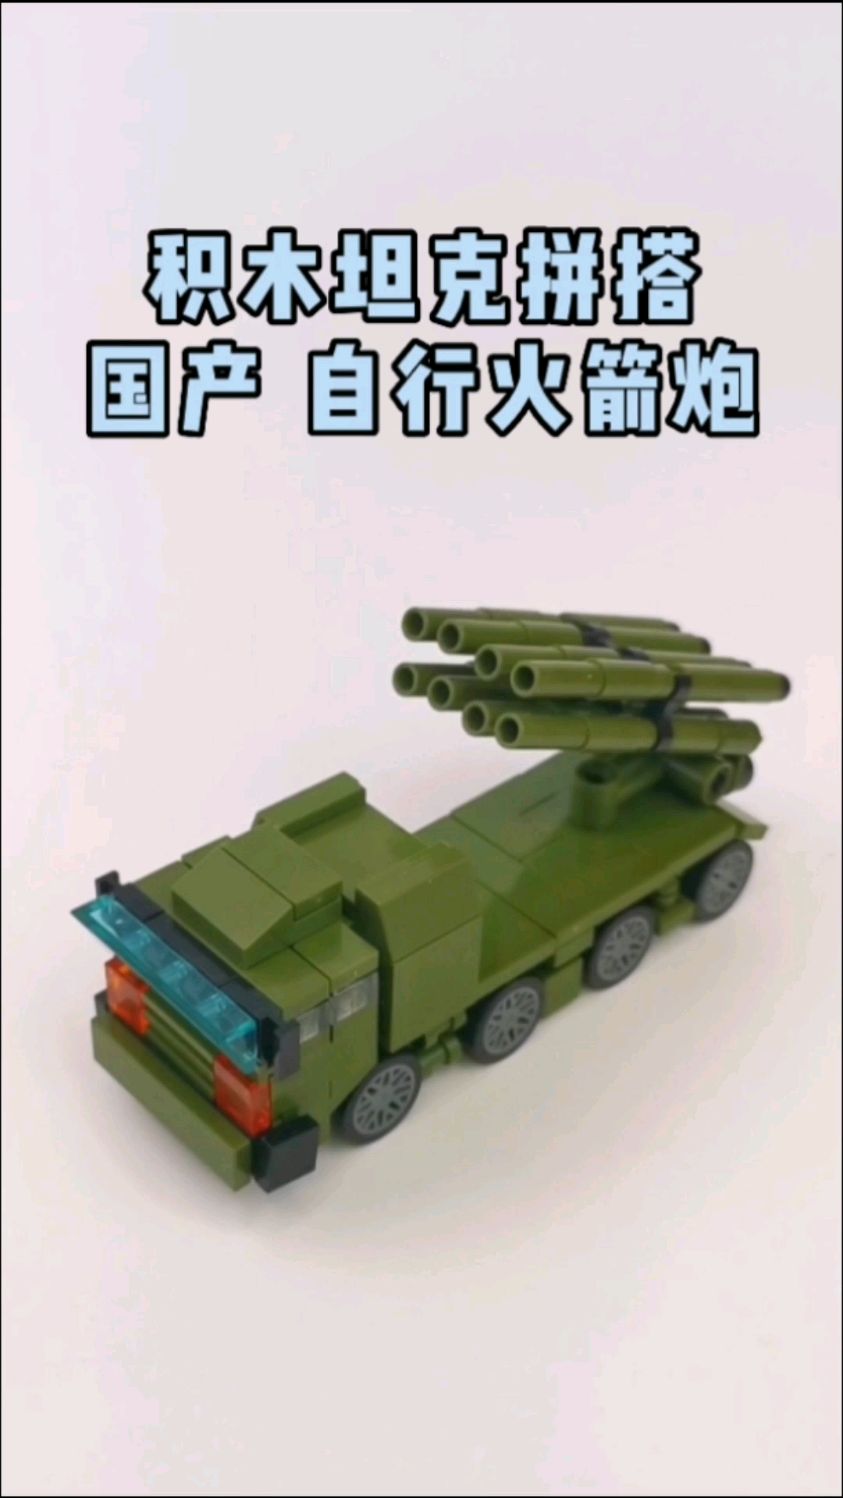 中国力量国产自行火箭炮积木,乐高拼搭快乐多